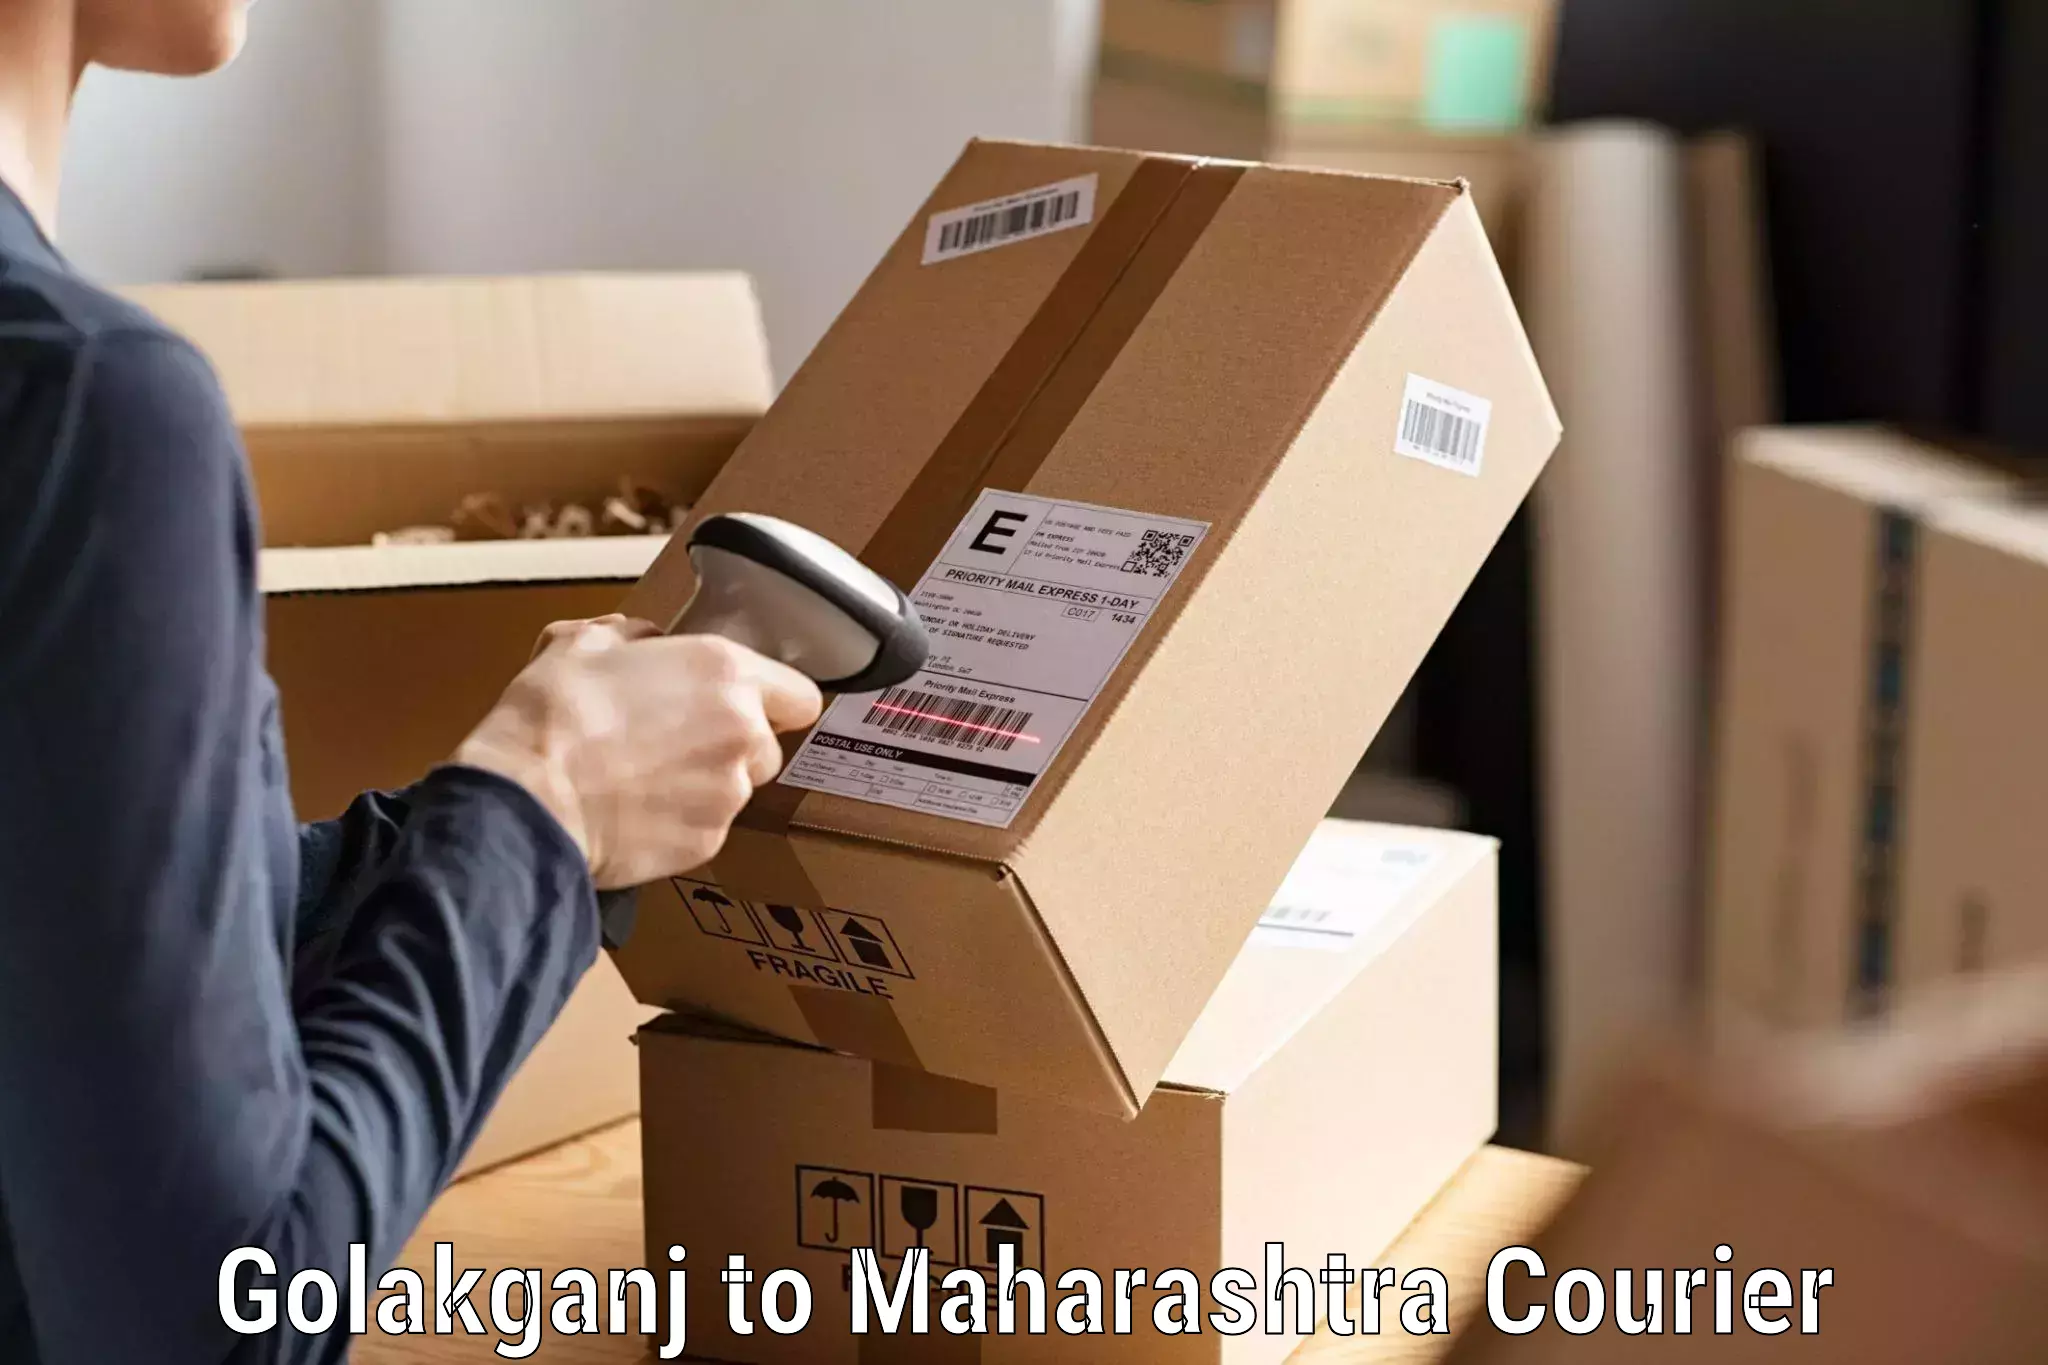 Cash on delivery service Golakganj to Mangrulpir